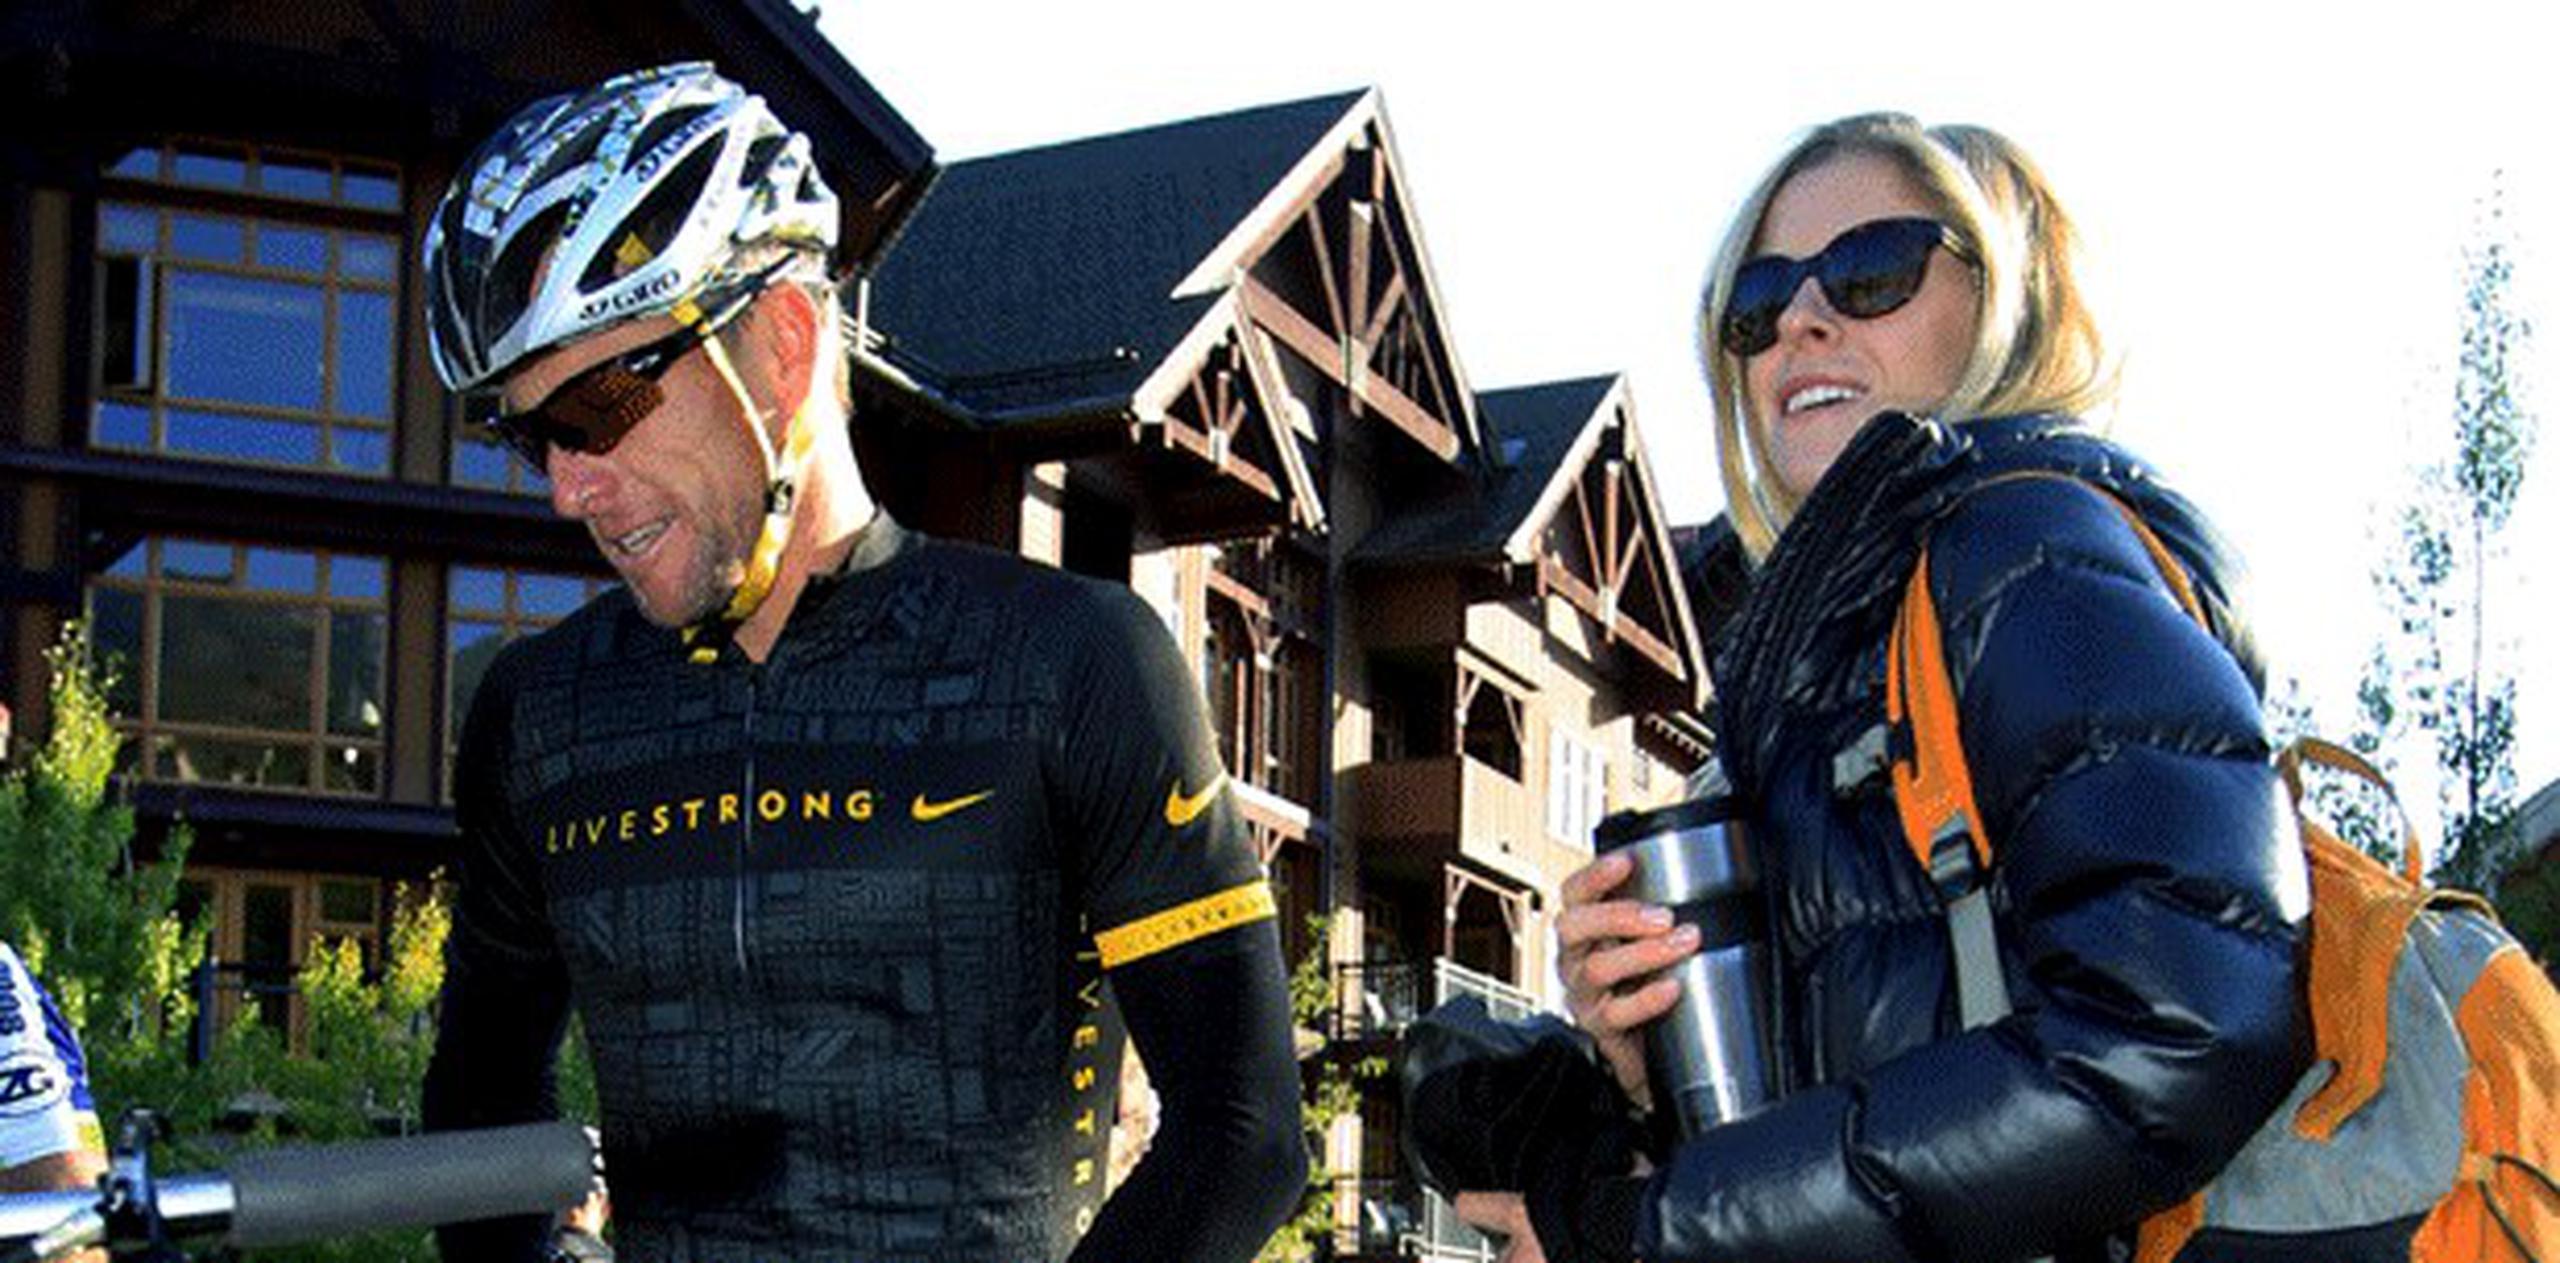 La policía de Aspen dice que Armstrong no reportó el choque y su posterior huida al acudir a un citatorio el 12 de enero, luego del accidente ocurrido el 28 de diciembre, y sólo lo hizo hasta que su novia Anna Hansen aceptara mentir por él. (Archivo)